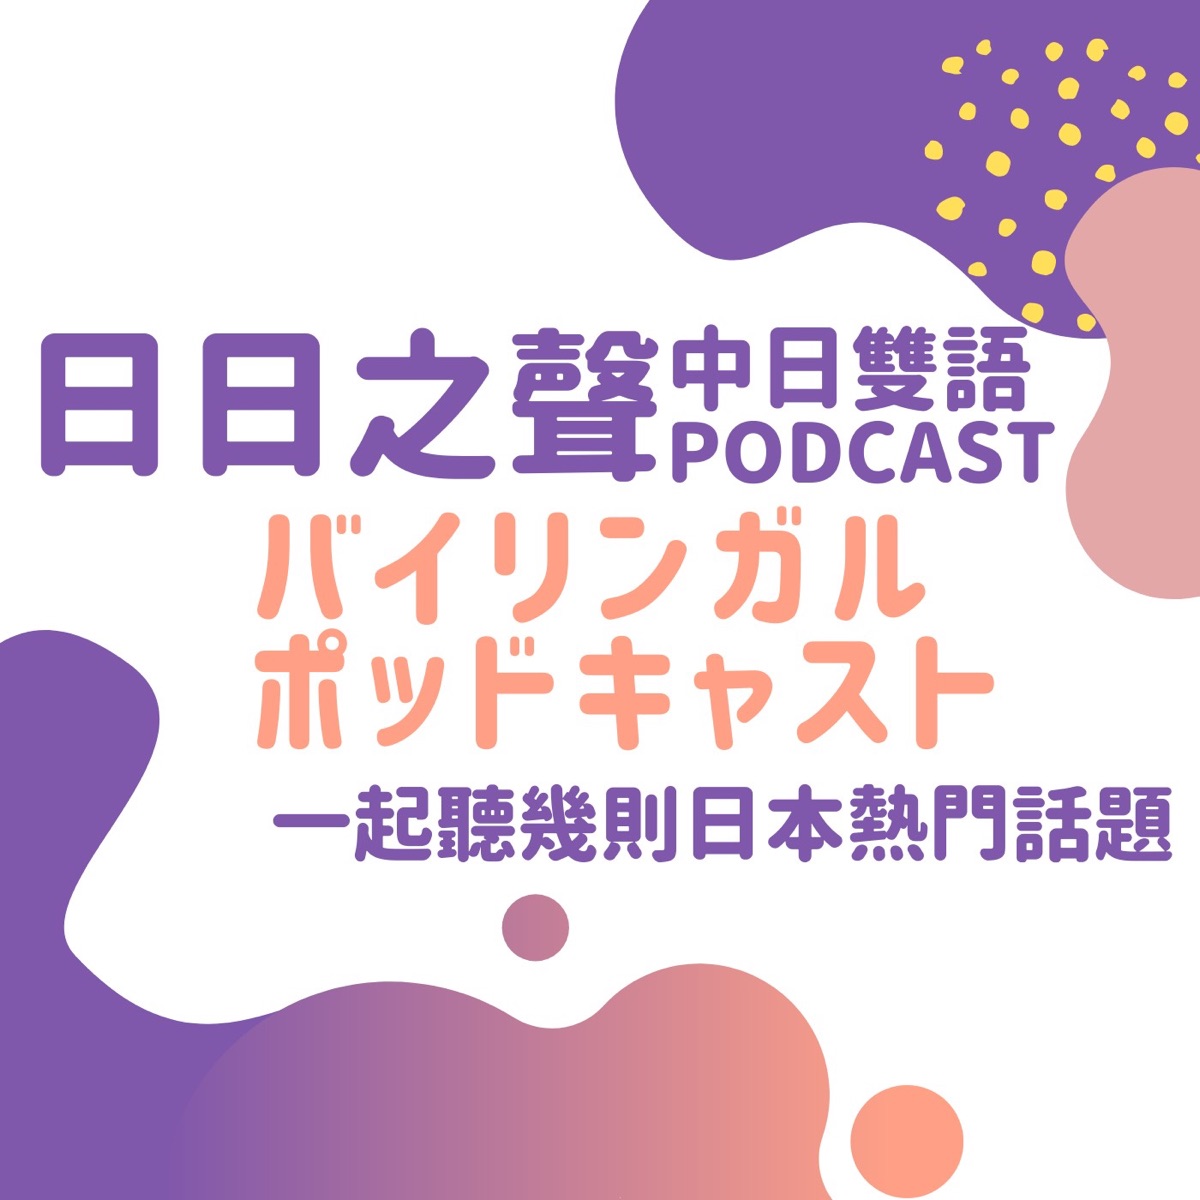 日日之聲中日雙語podcast Podkast Podtail